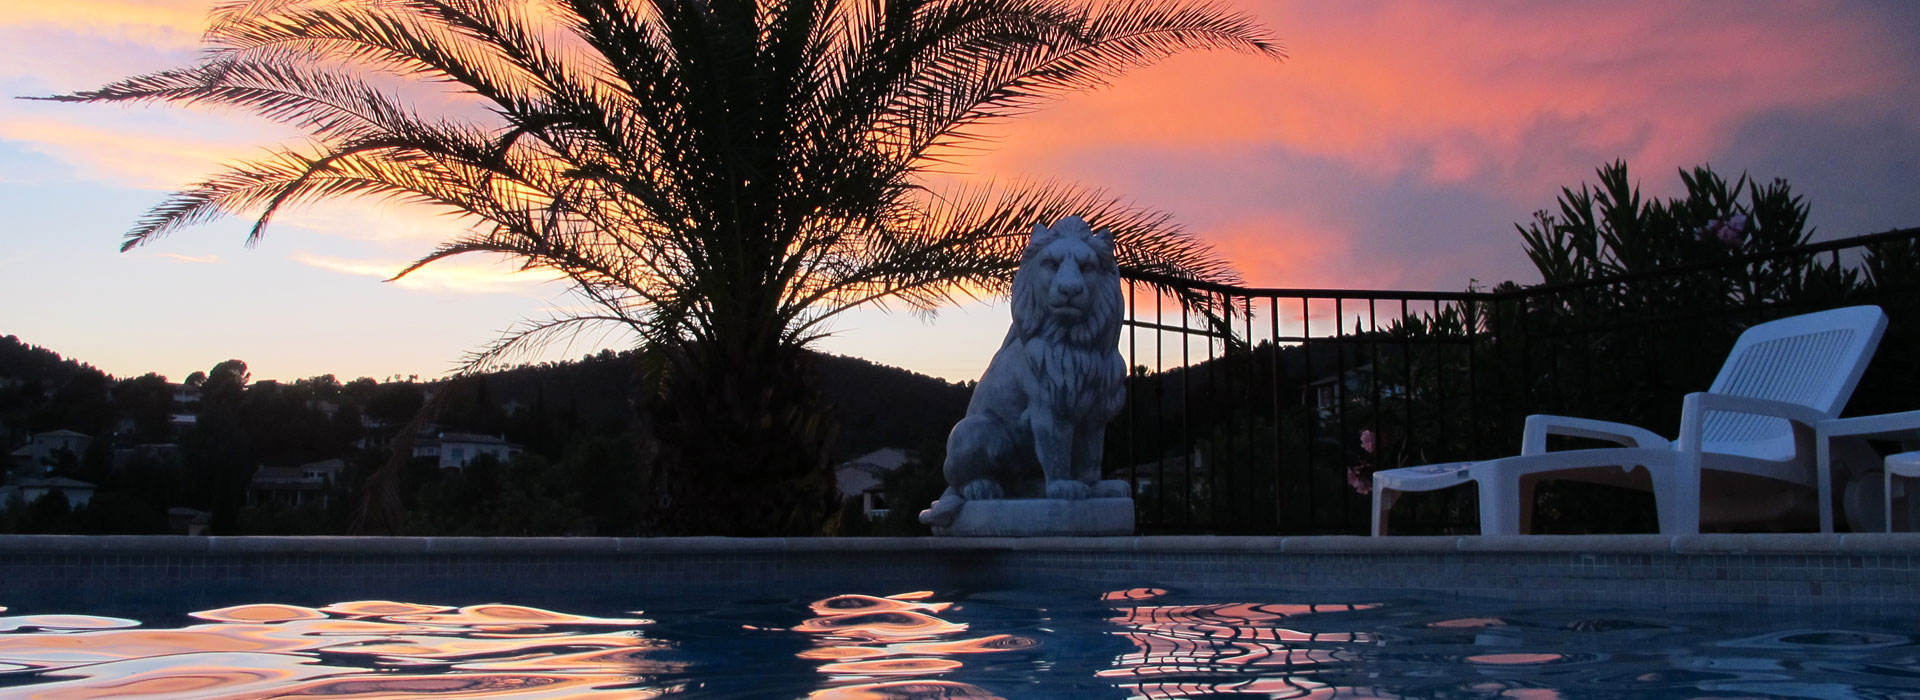 Sonnenuntergang - Villa Soleil des Adrets - Côte d'Azur - Frankreich